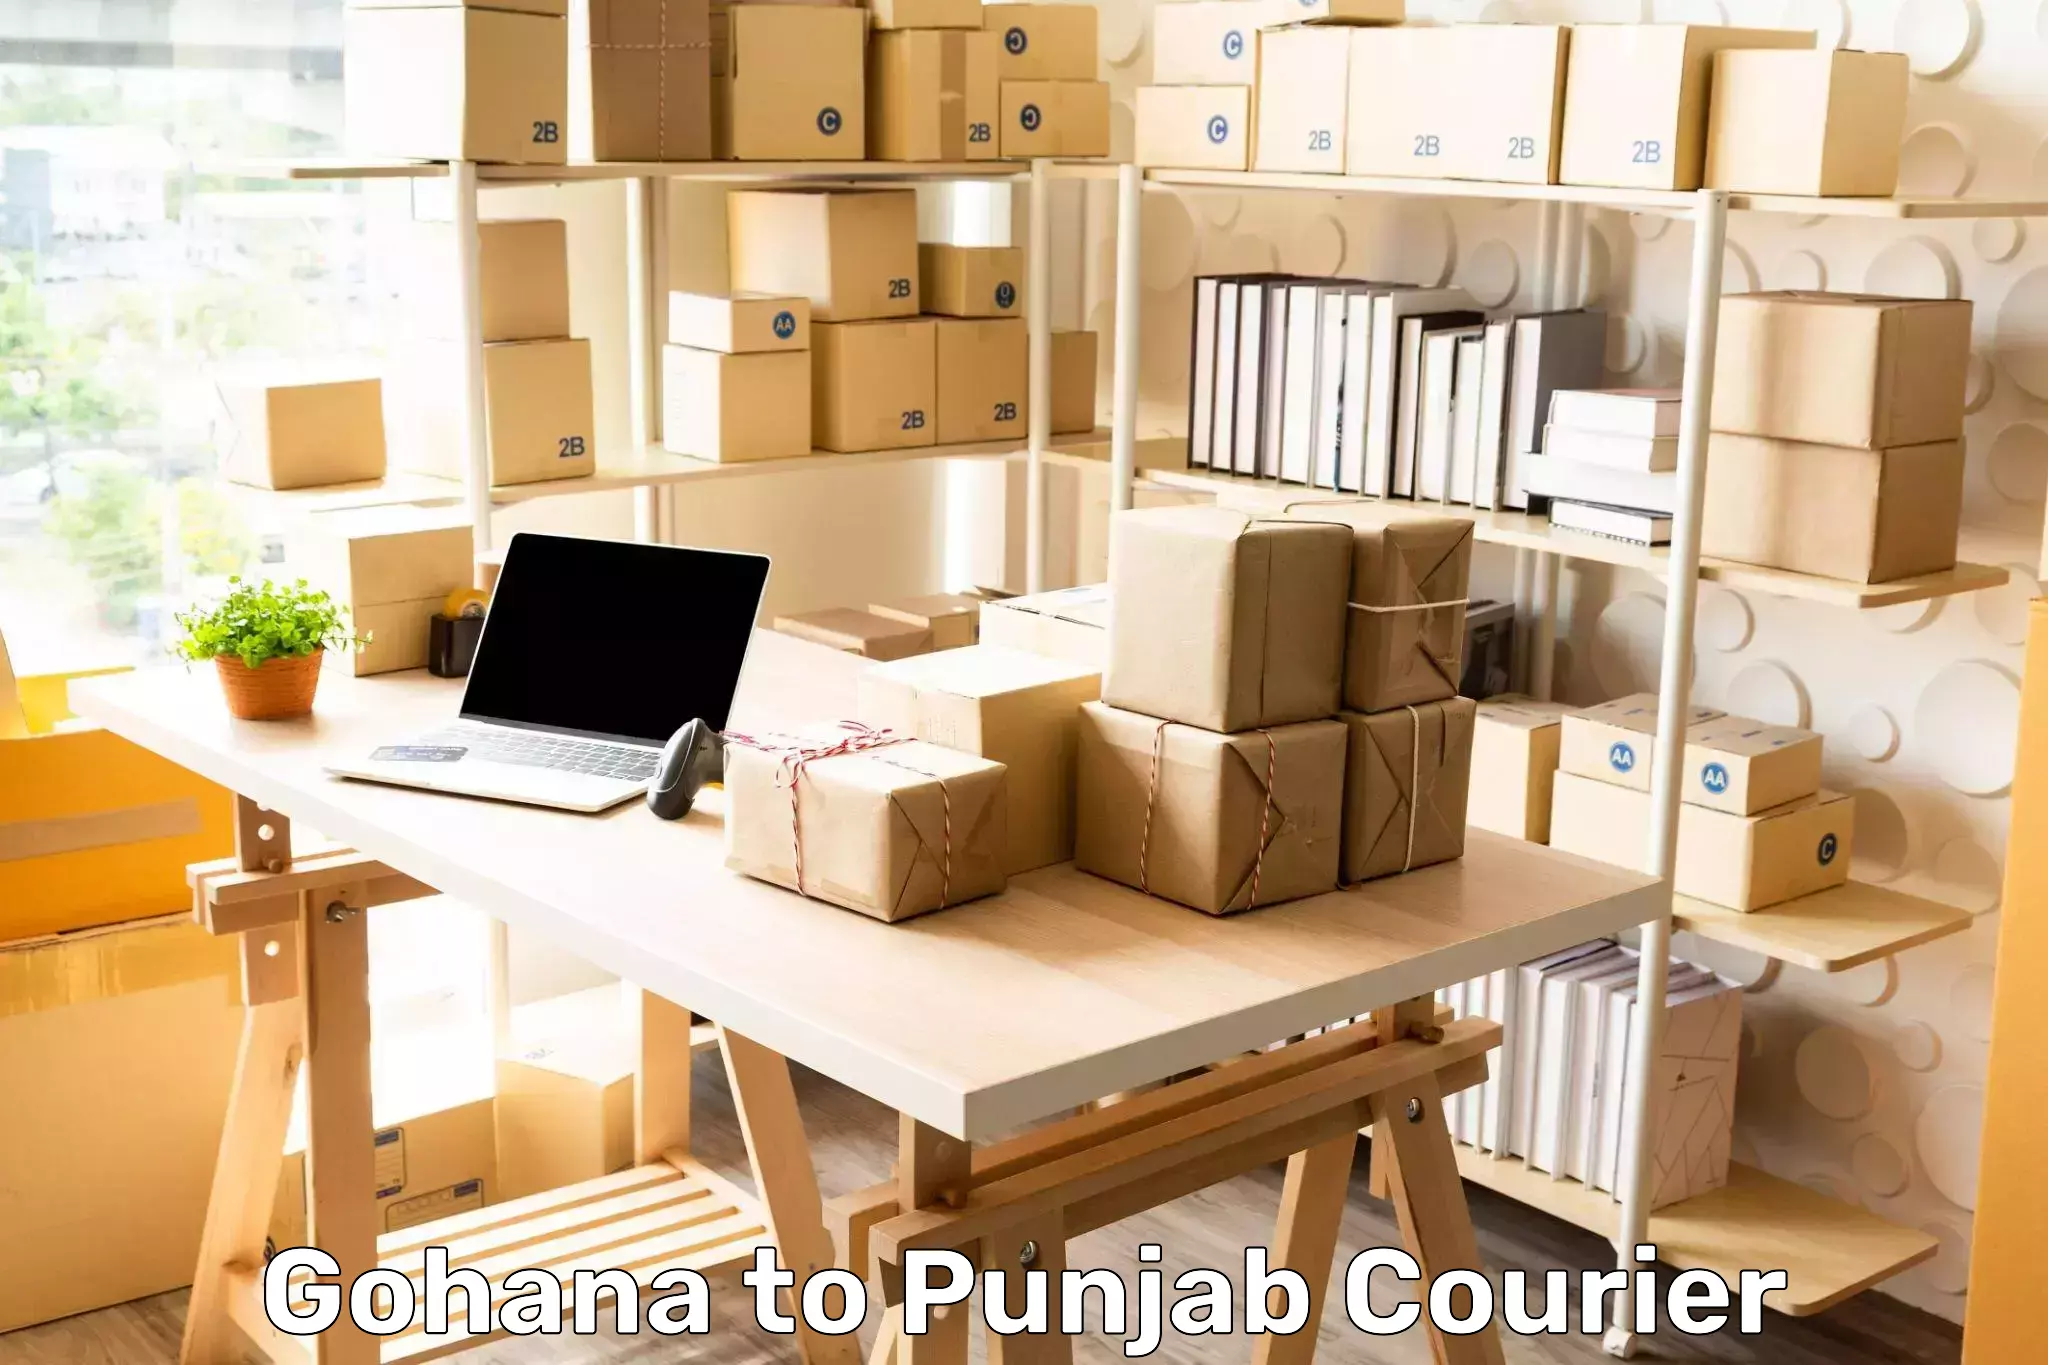 Specialized shipment handling Gohana to Dinanagar